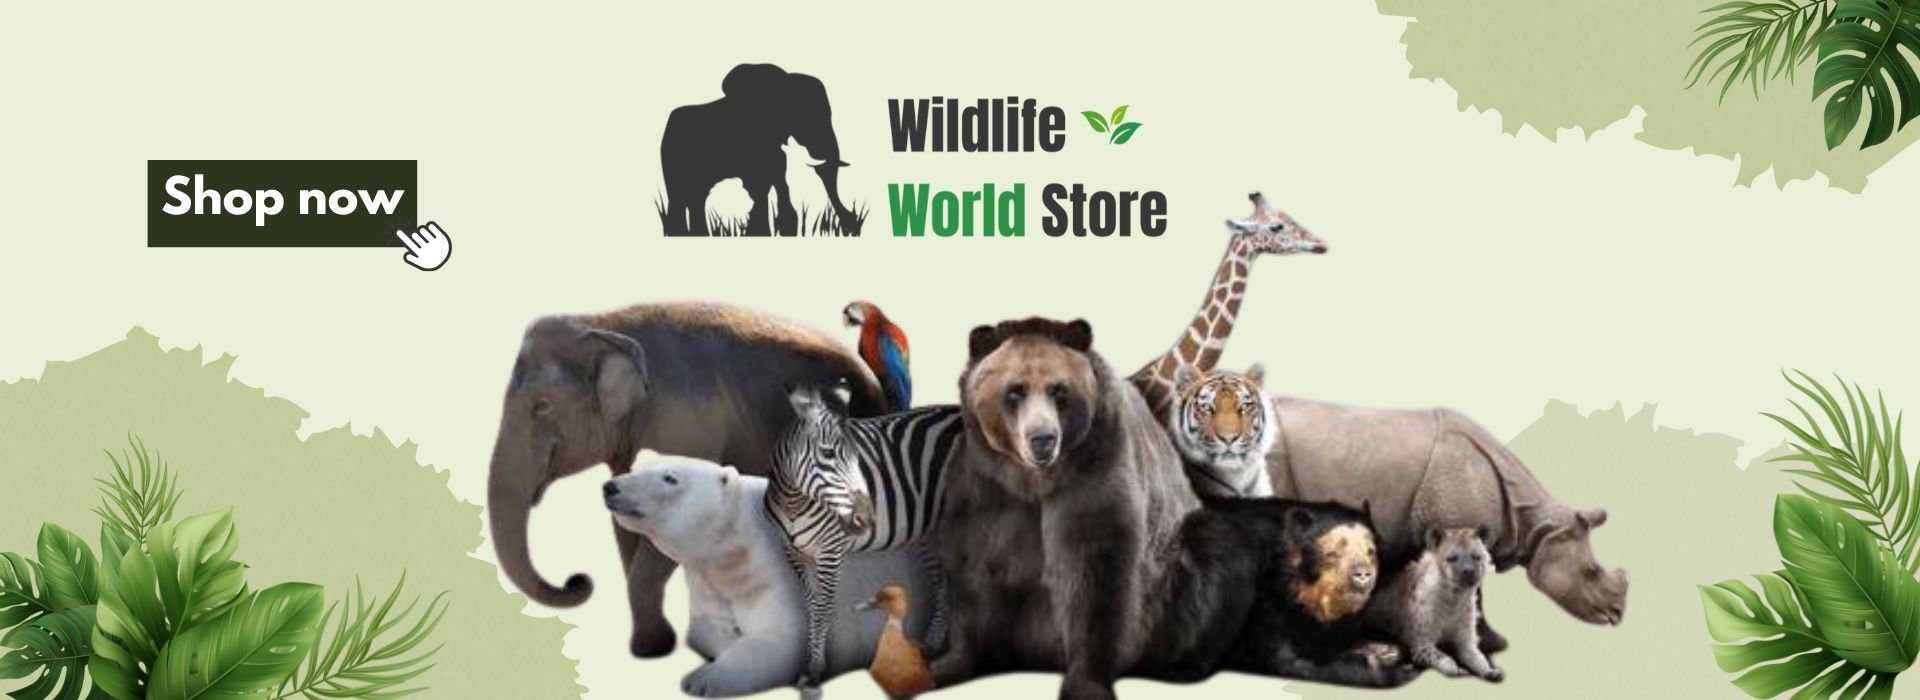 Wildlife World Store Banner